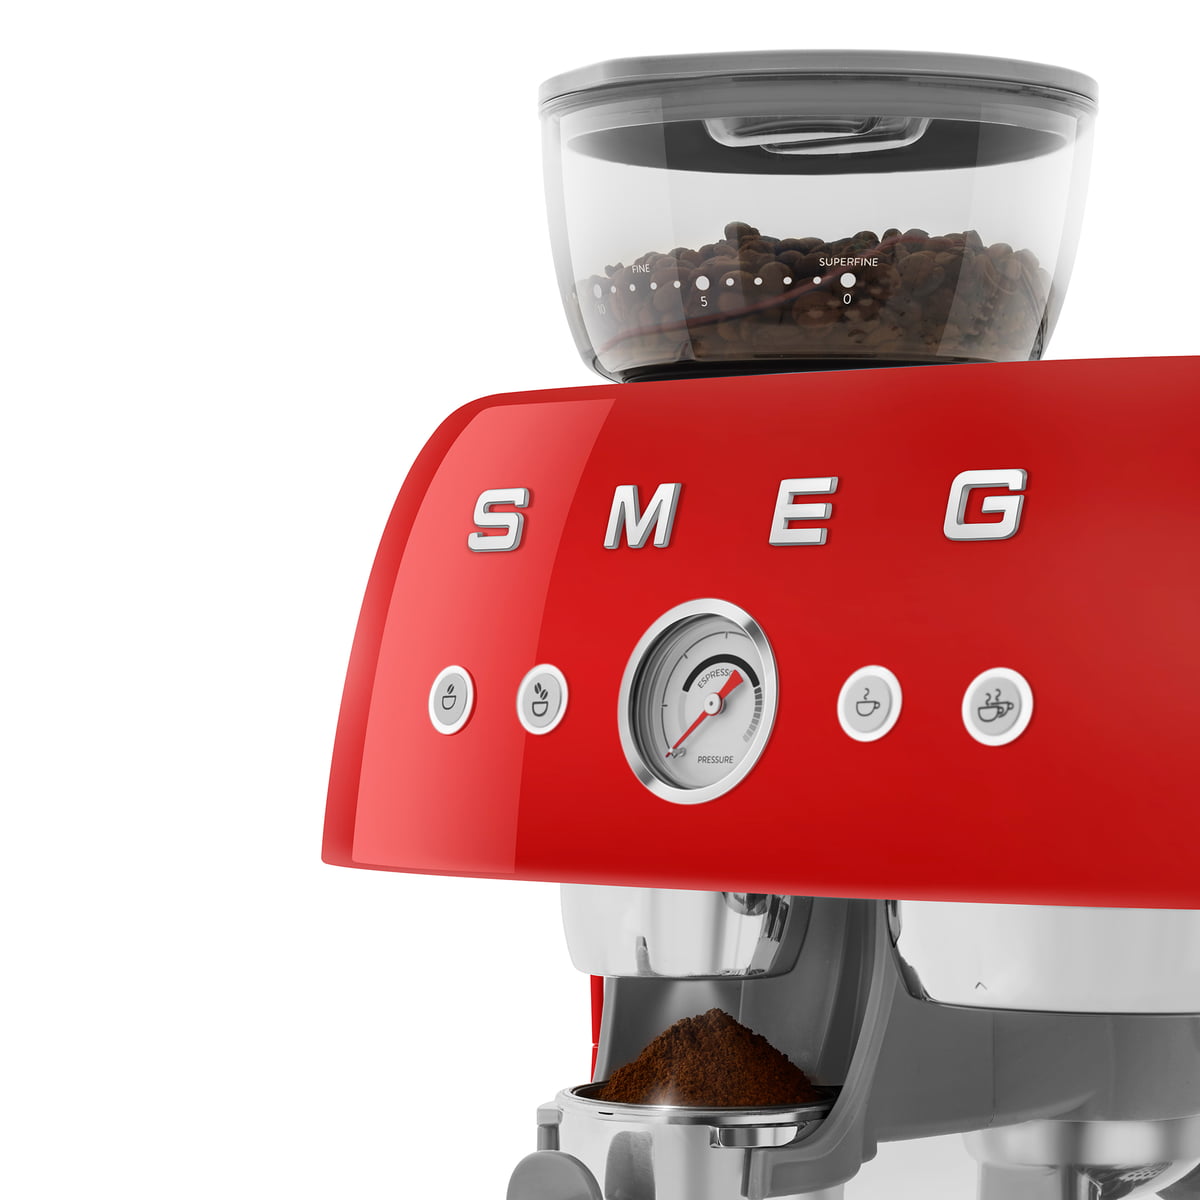 Smeg Red Drip Coffee Maker + Reviews